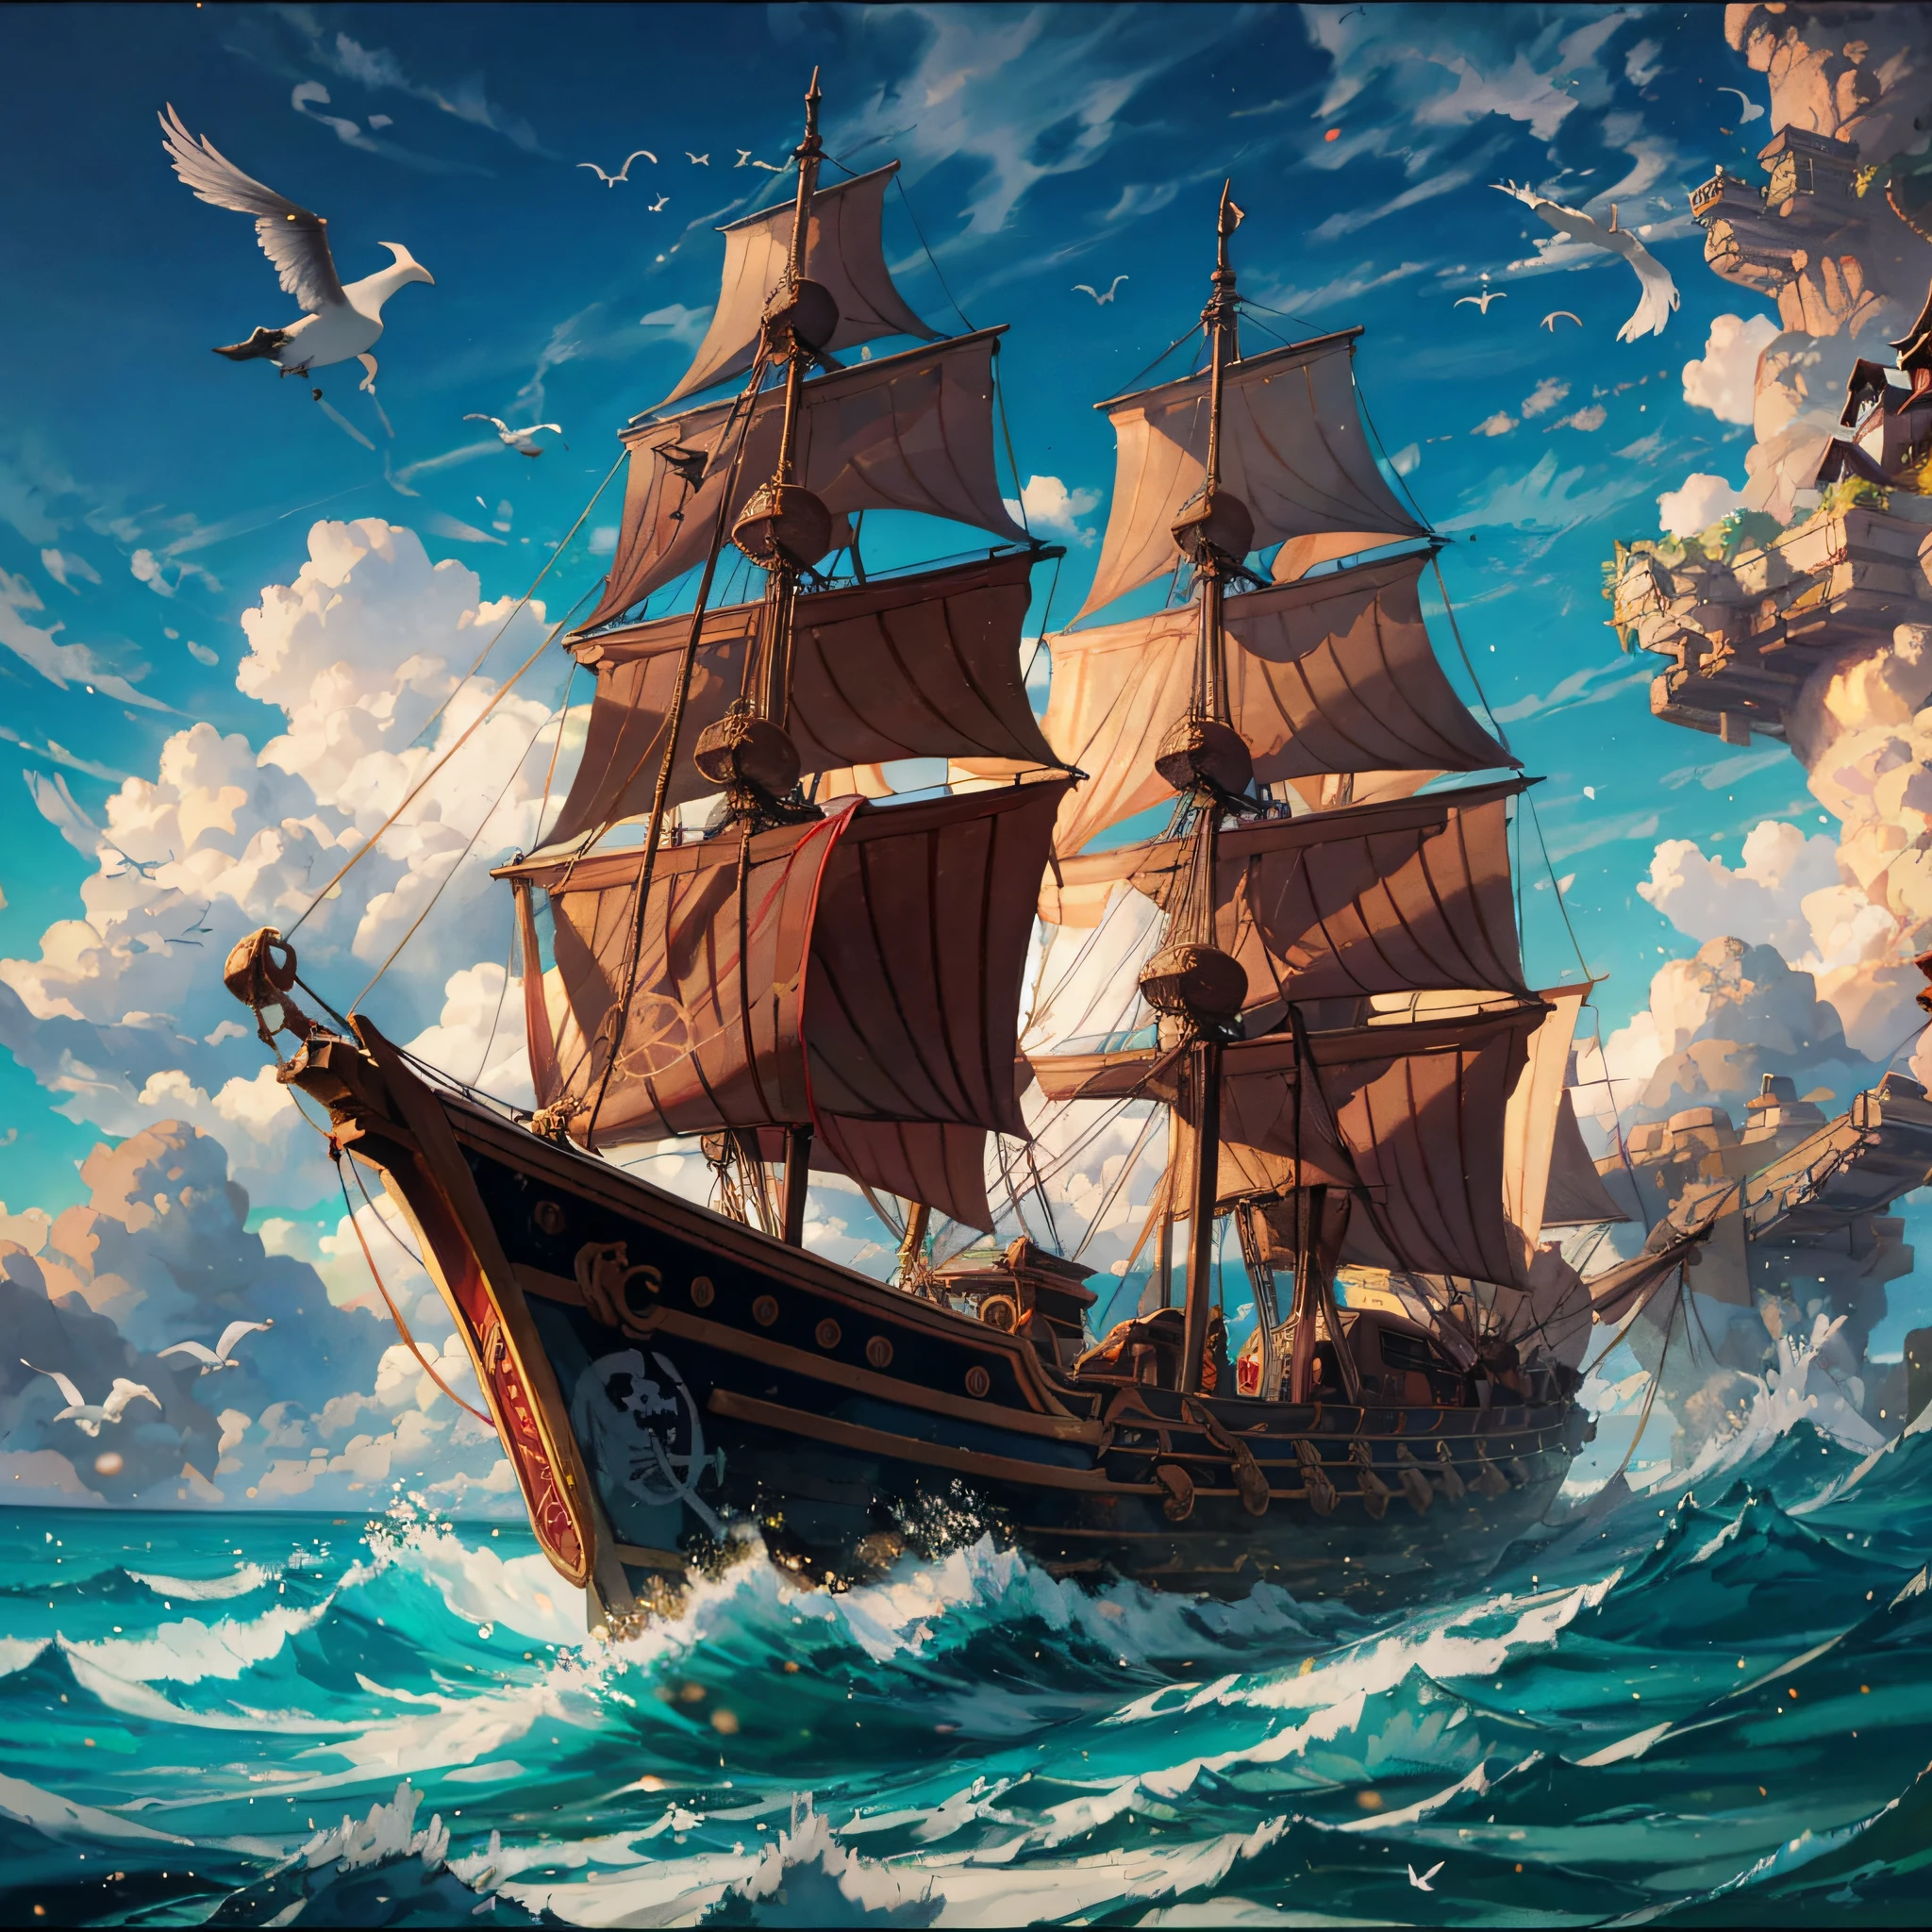 Malstil von Frederick Edwin Church, Piratenschiff, Schlacht, Möwe, Rauchende Pistolen, exquisite Komposition, reichhaltige Komposition,